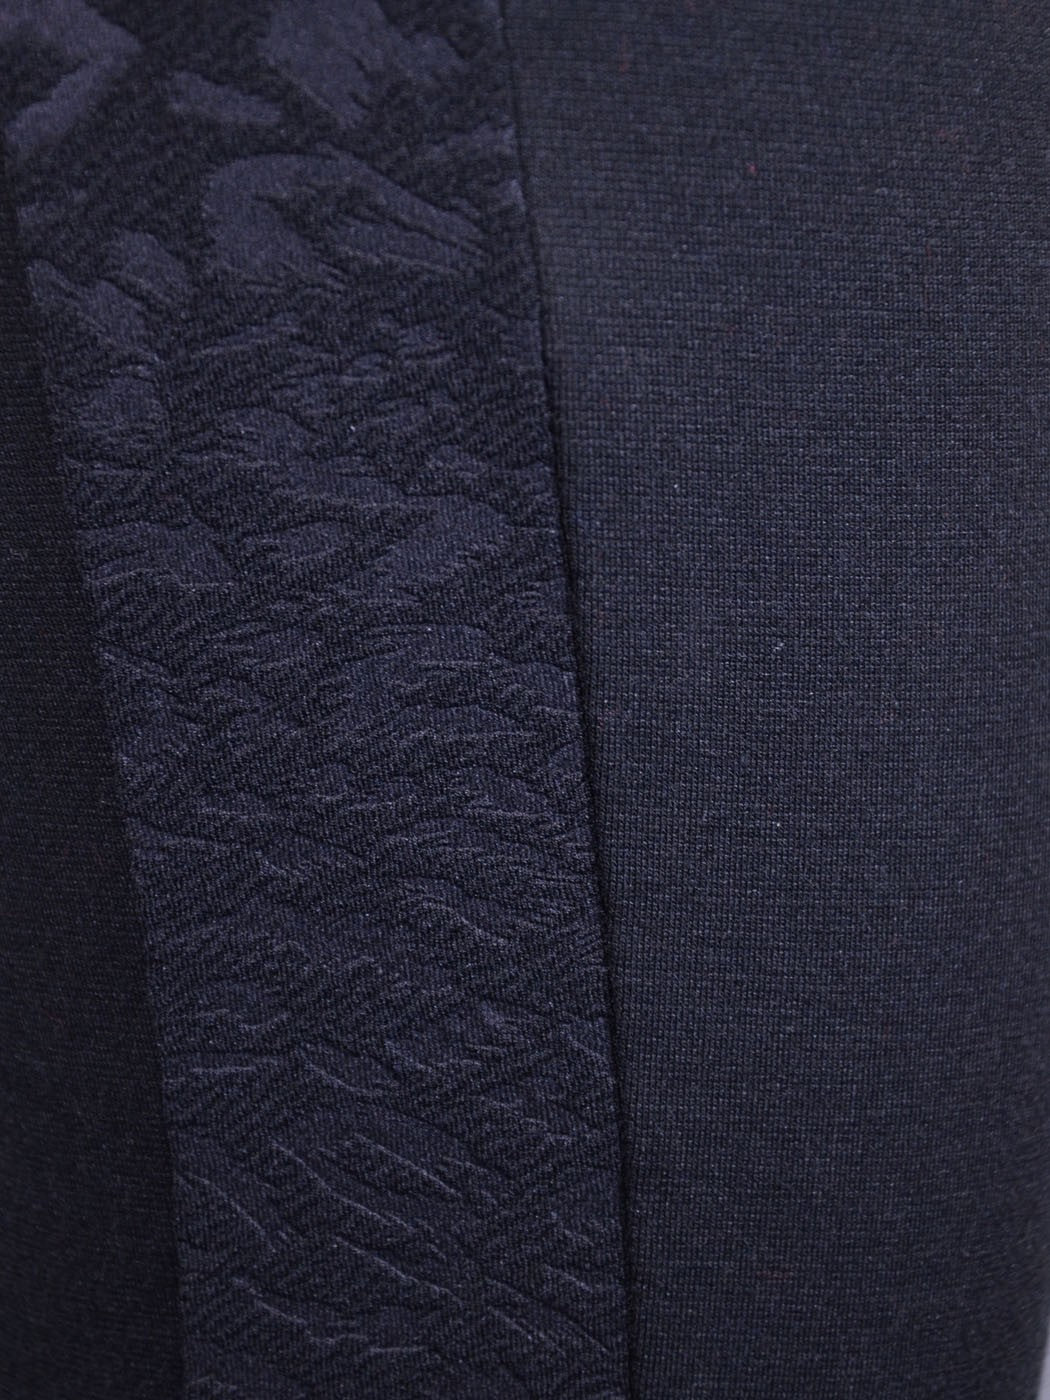 Tresics Brand  Black Tuxedo Style Side Leg Panels Leopard Print Leggings